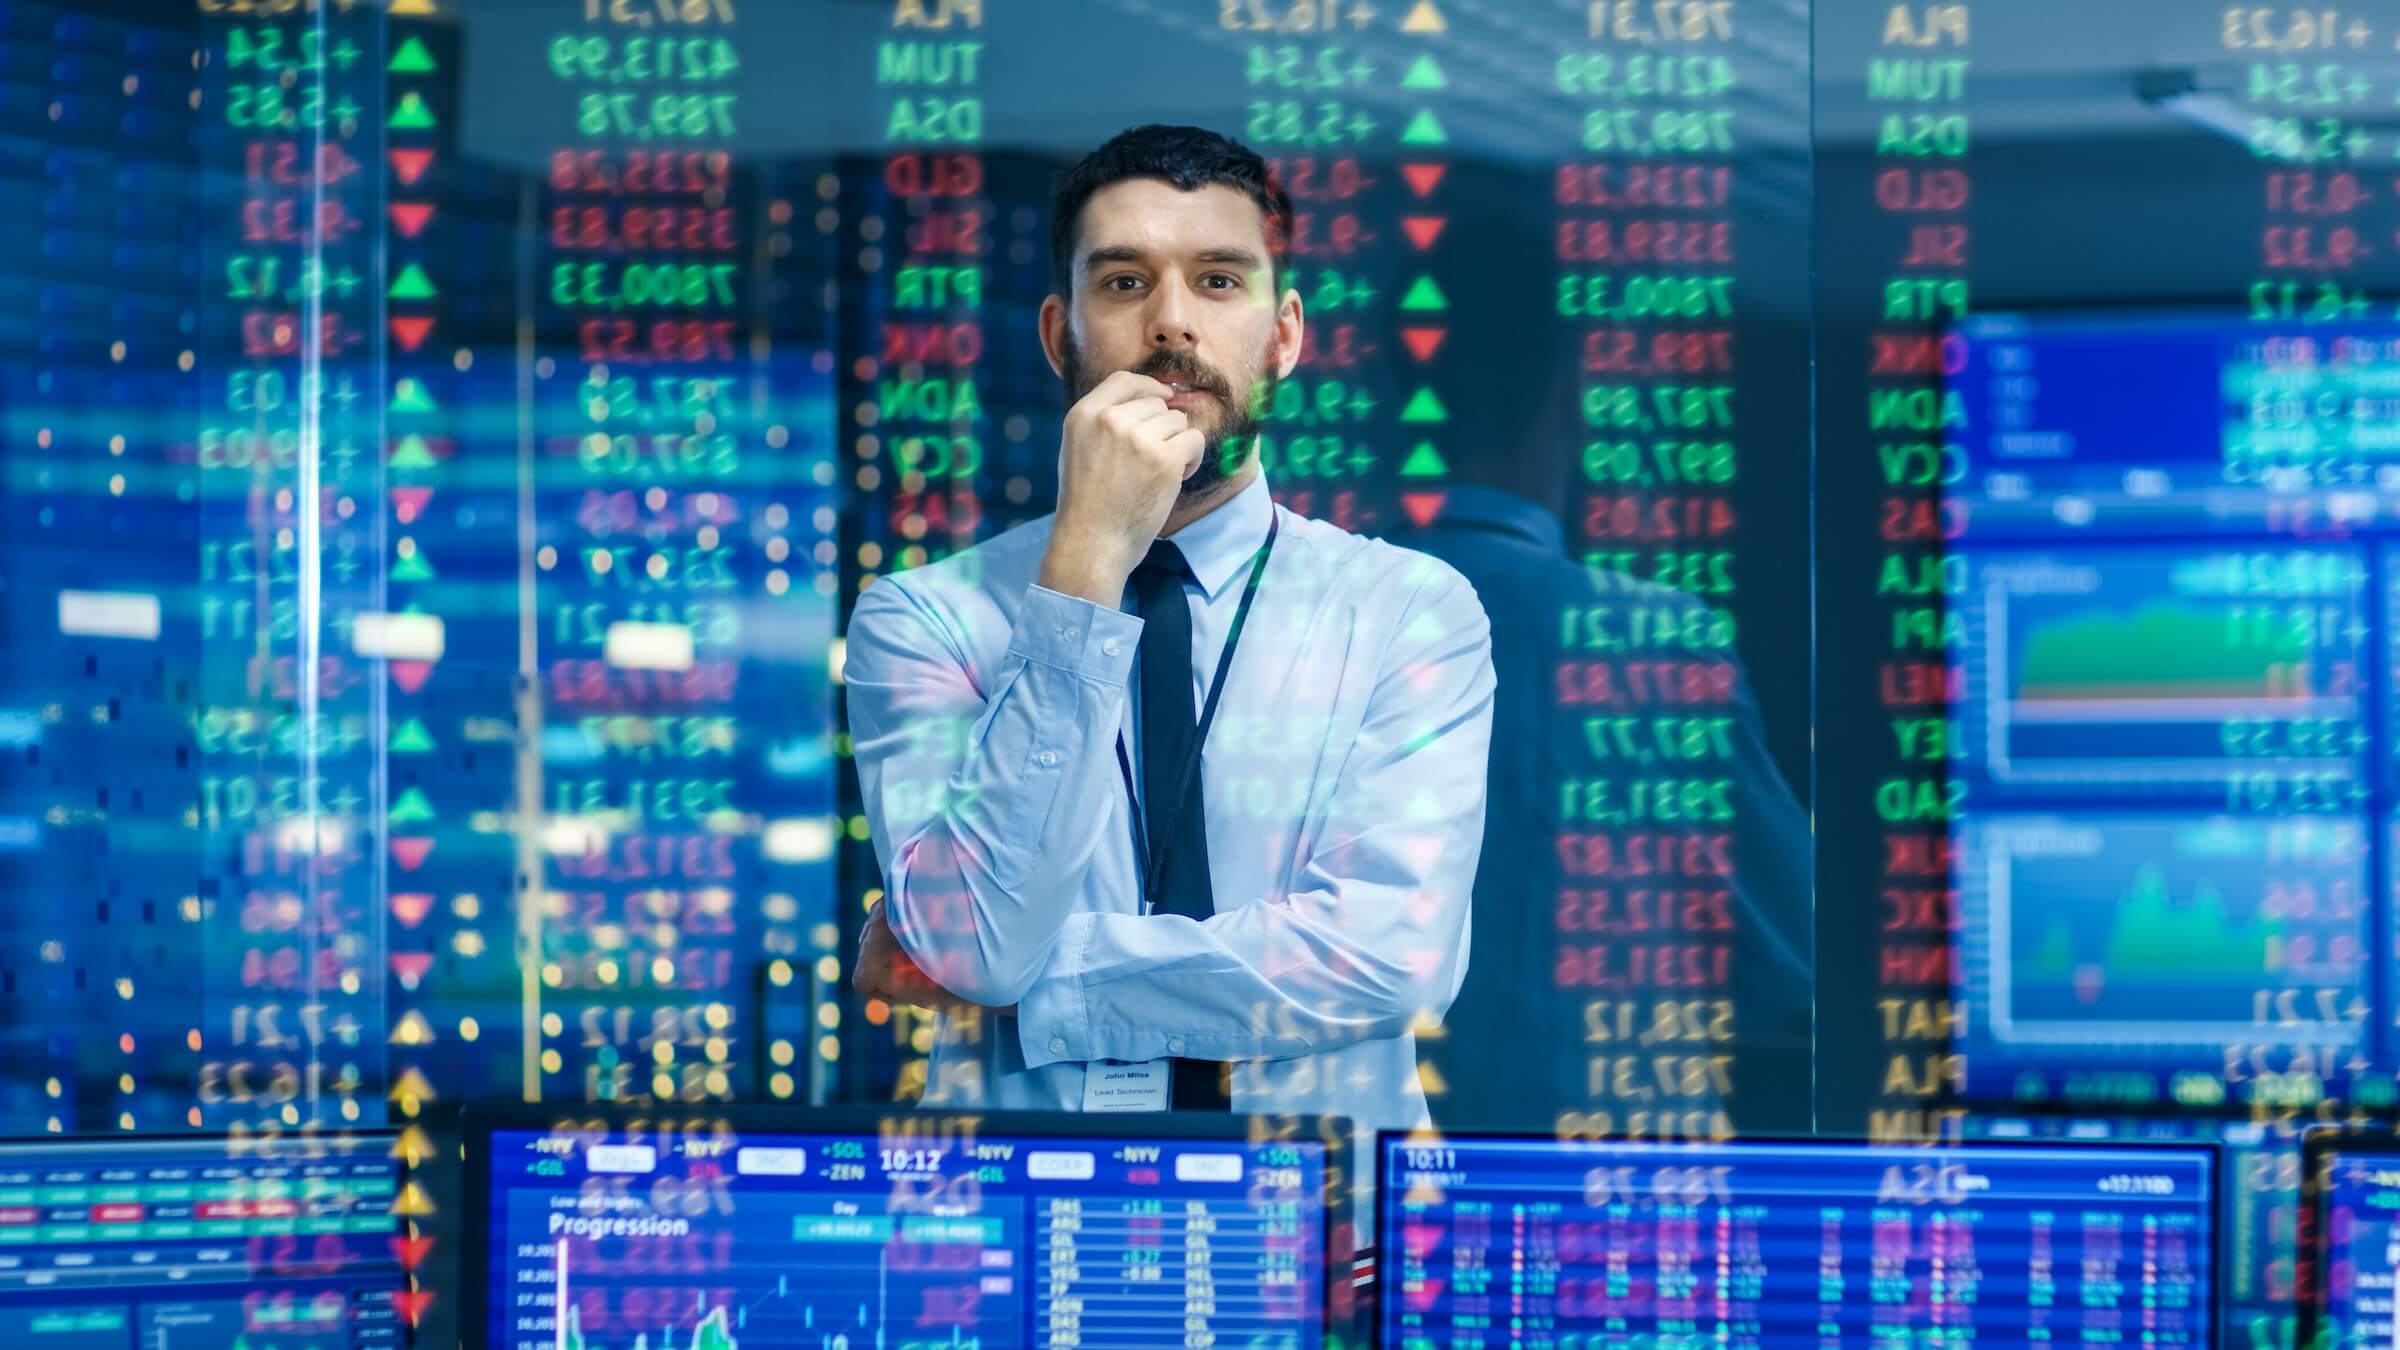 Rynek akcji top trader, mężczyzna patrzy na prognozowane numery i wykresy